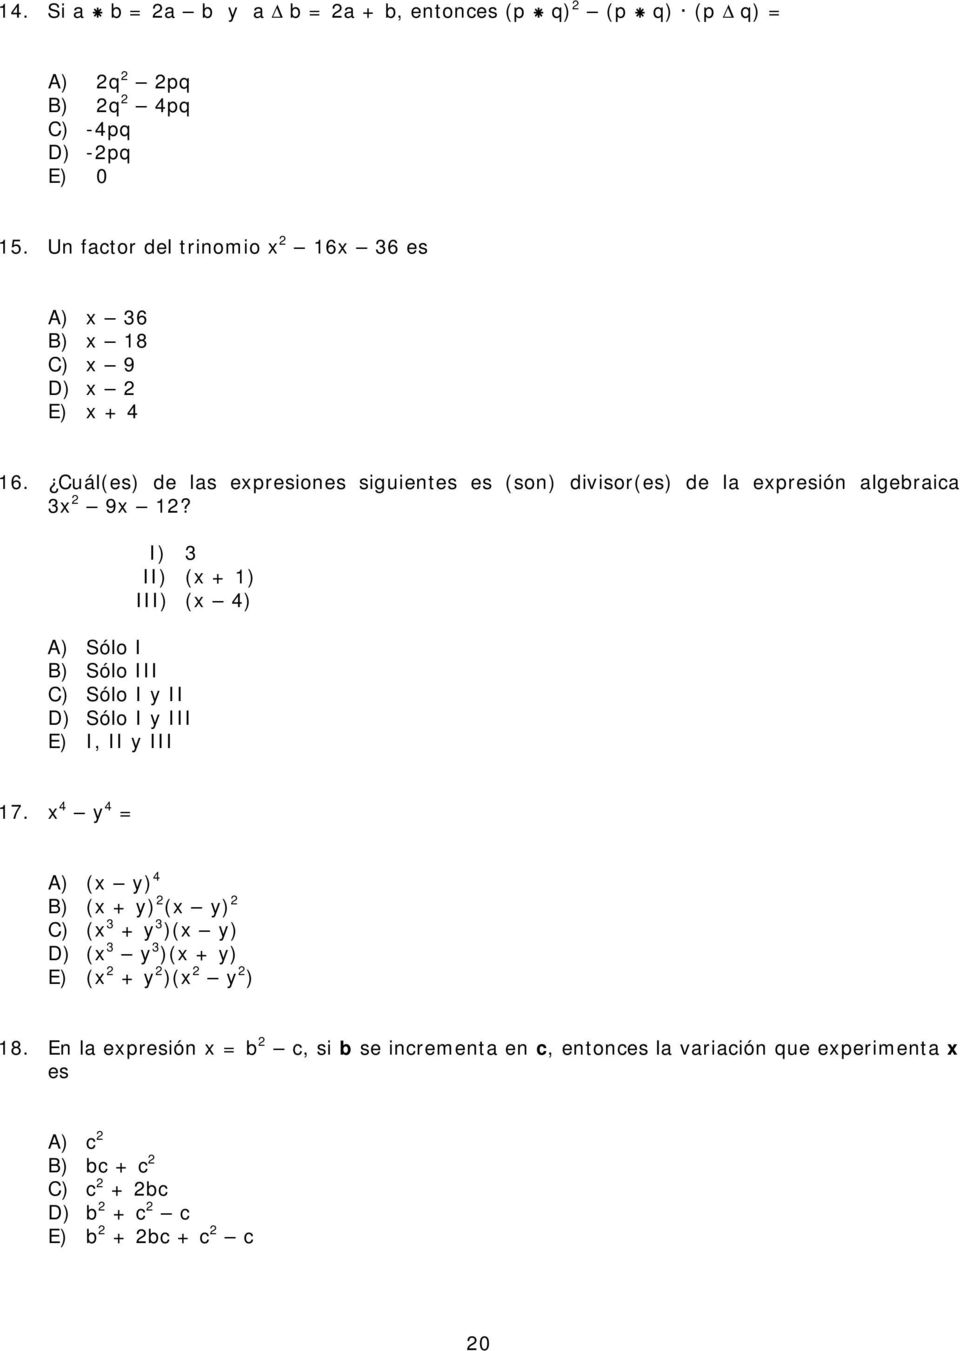 Cuál(es) de las epresiones siguientes es (son) divisor(es) de la epresión algebraica 9?